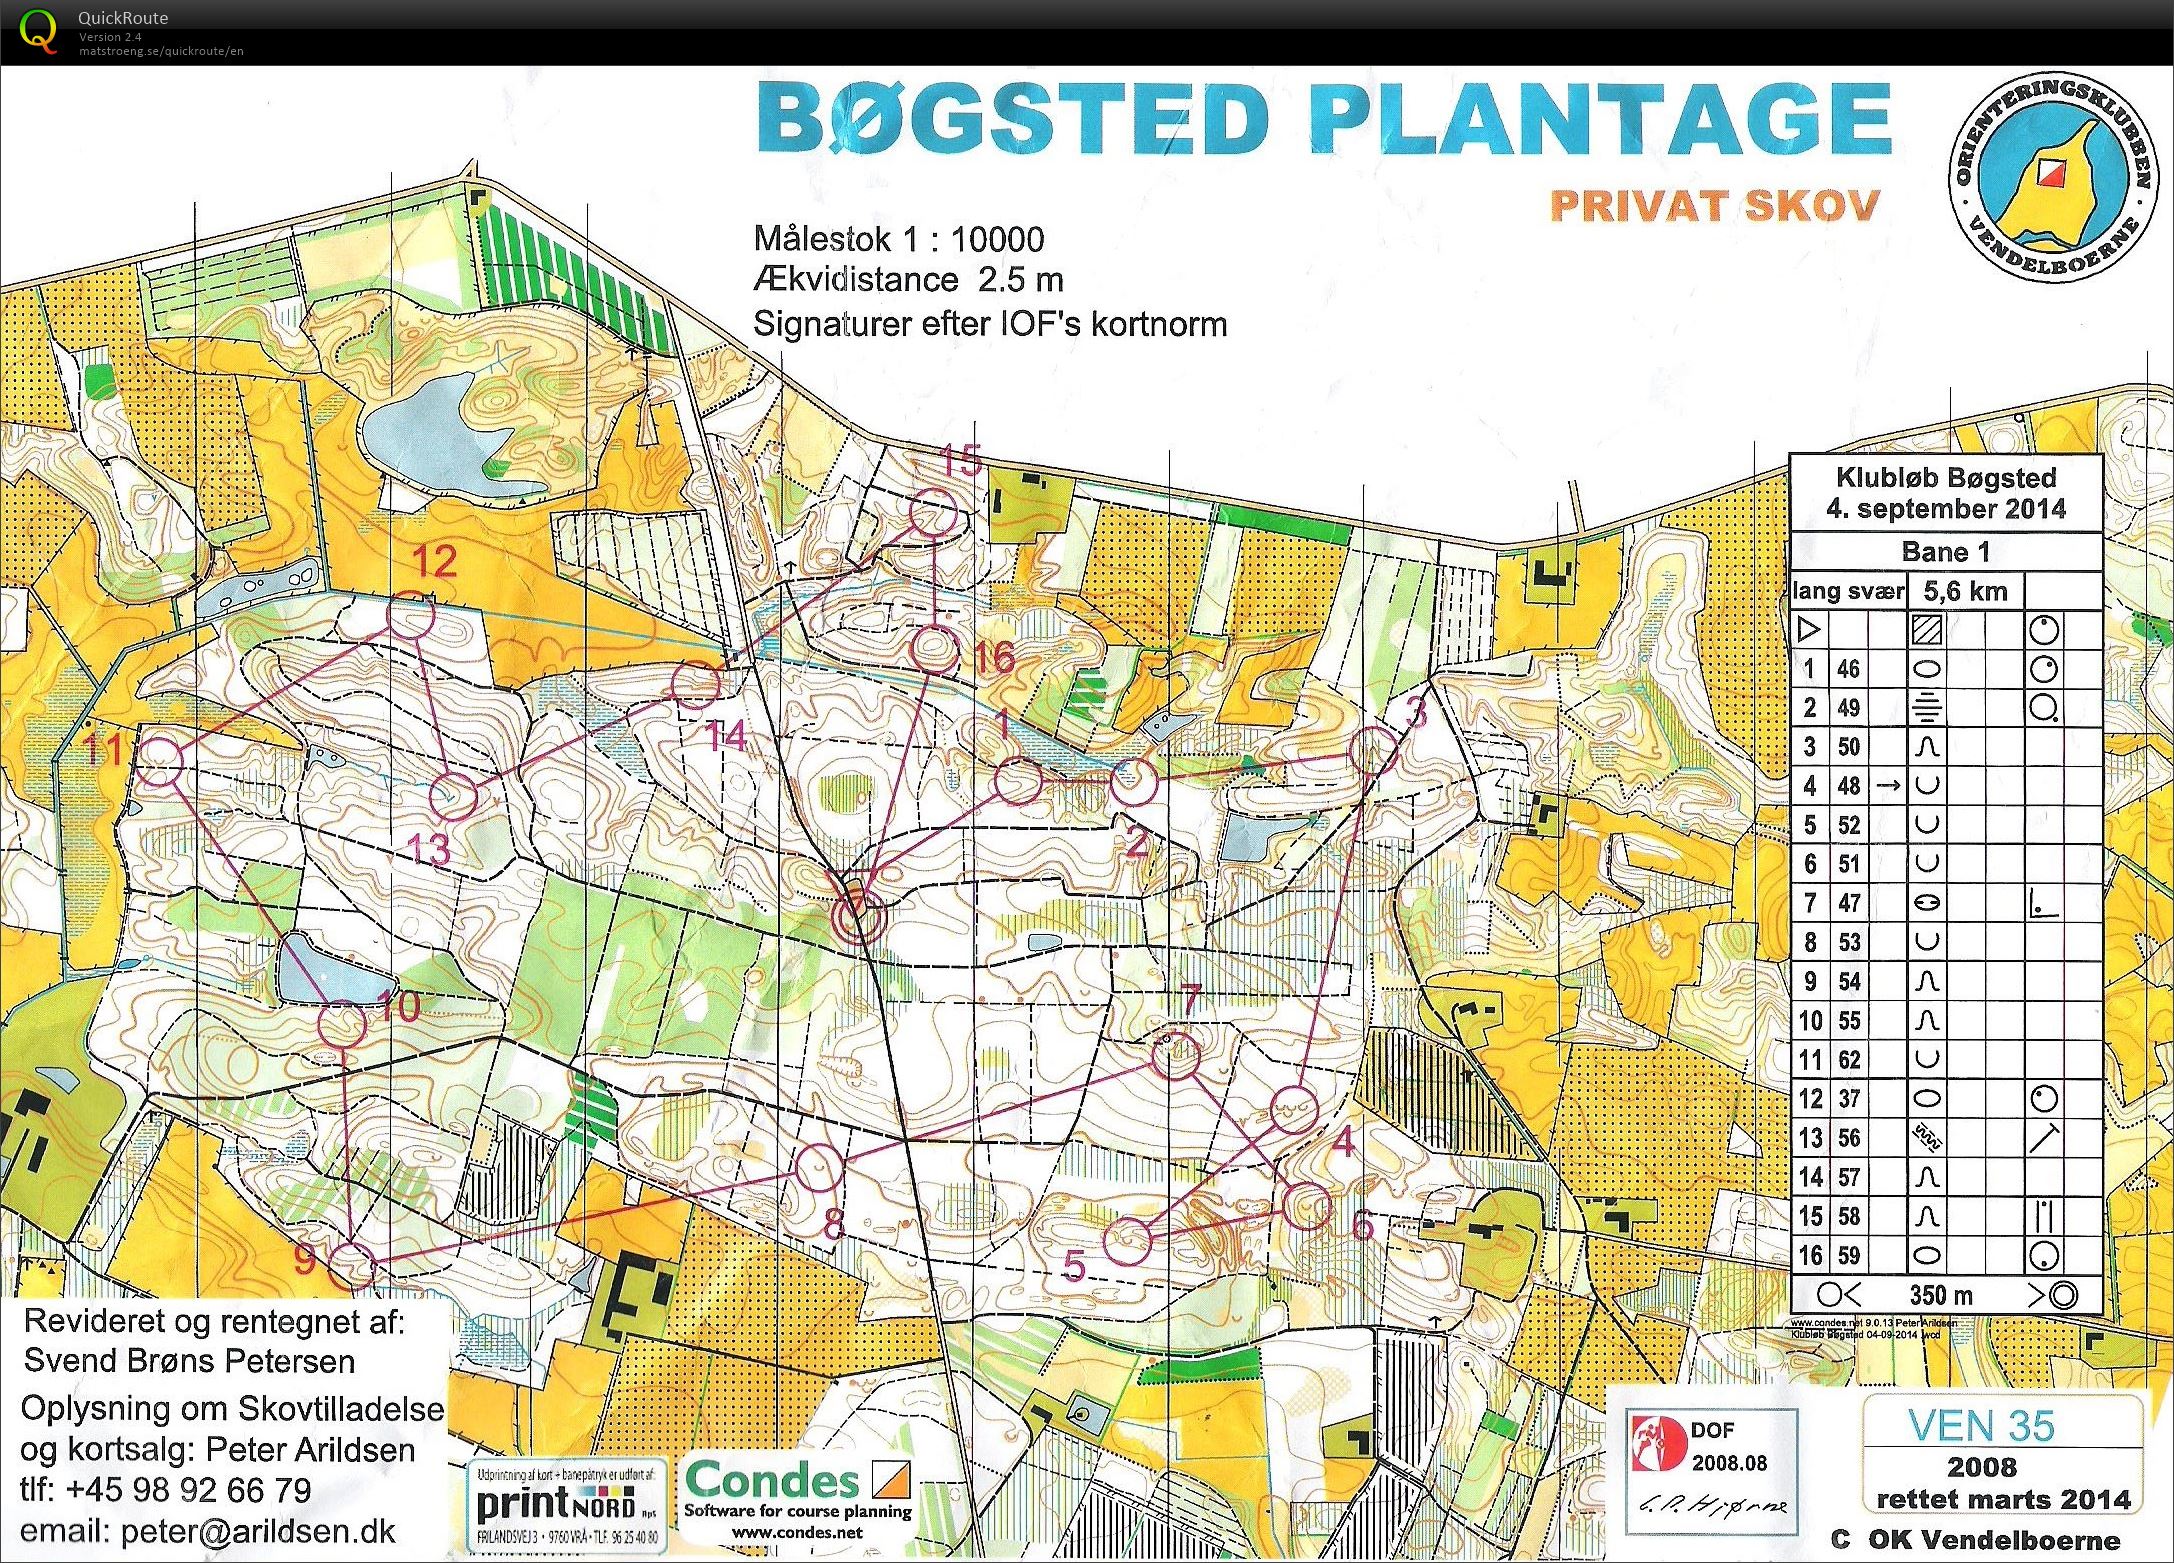 Bøgsted Plantage - Bane 1 (04-09-2014)